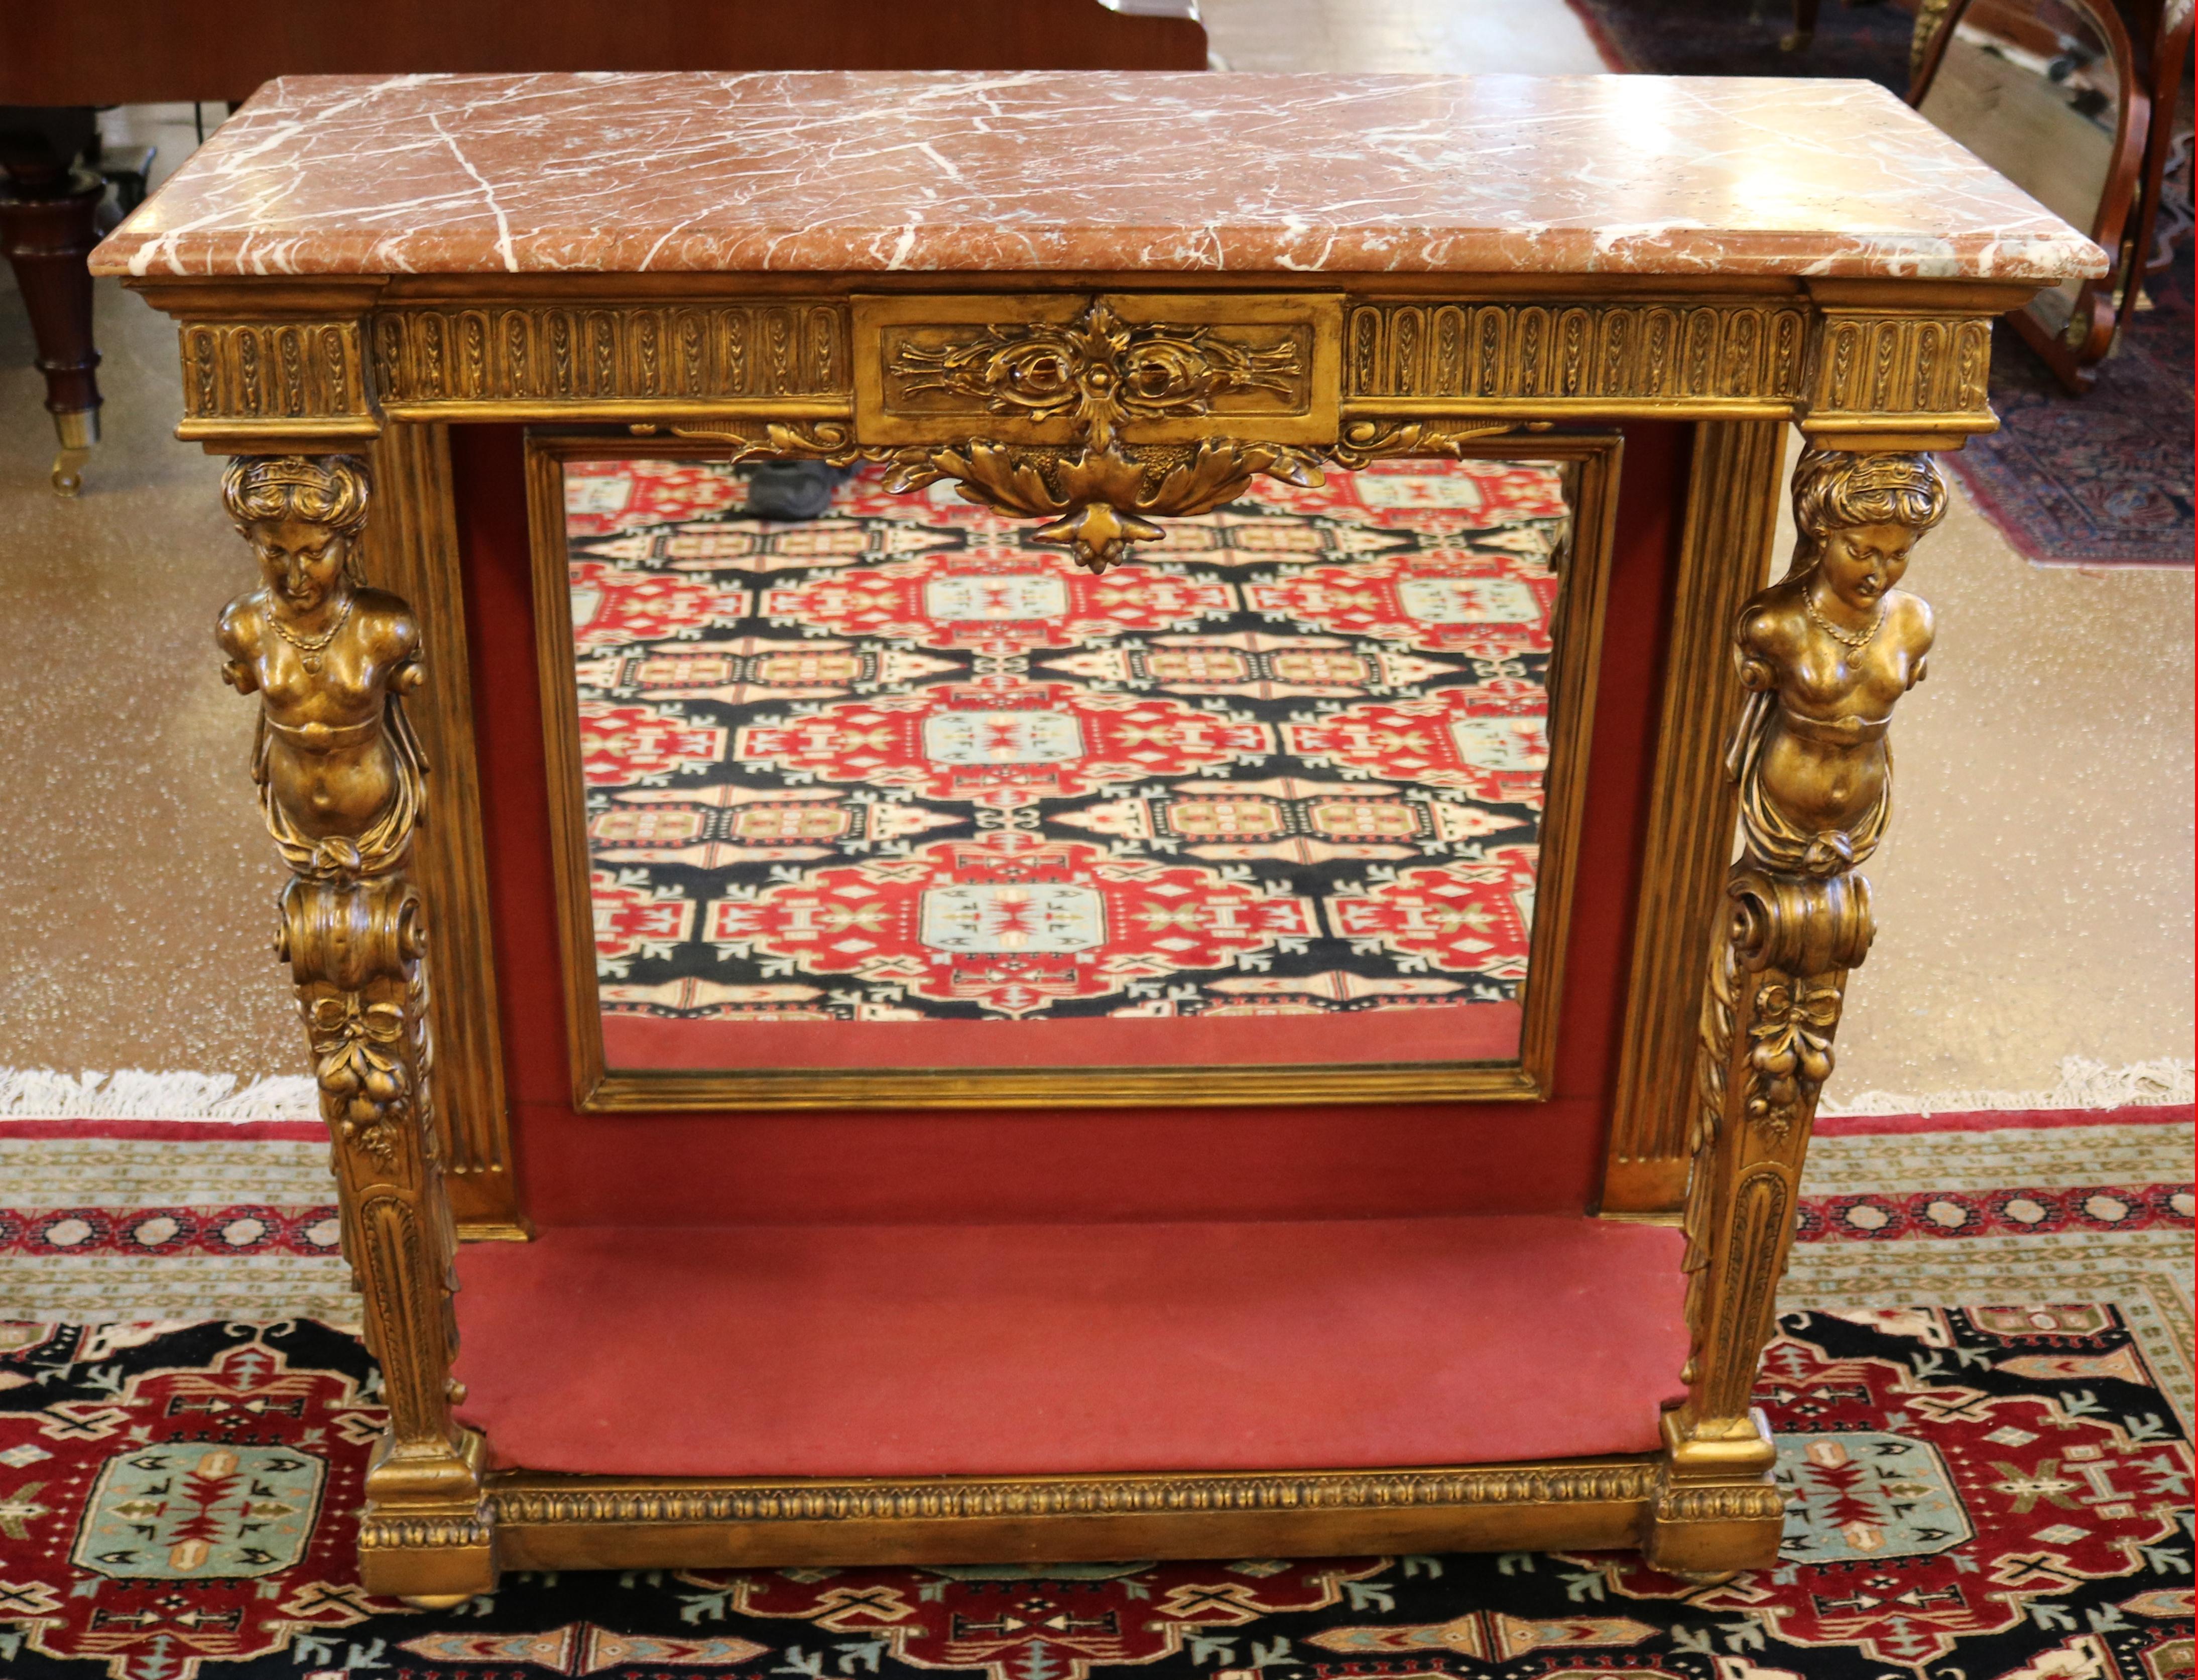 Stupéfiante table console figurative française du 19e siècle à plateau en marbre doré et à dos de miroir

Dimensions : 41